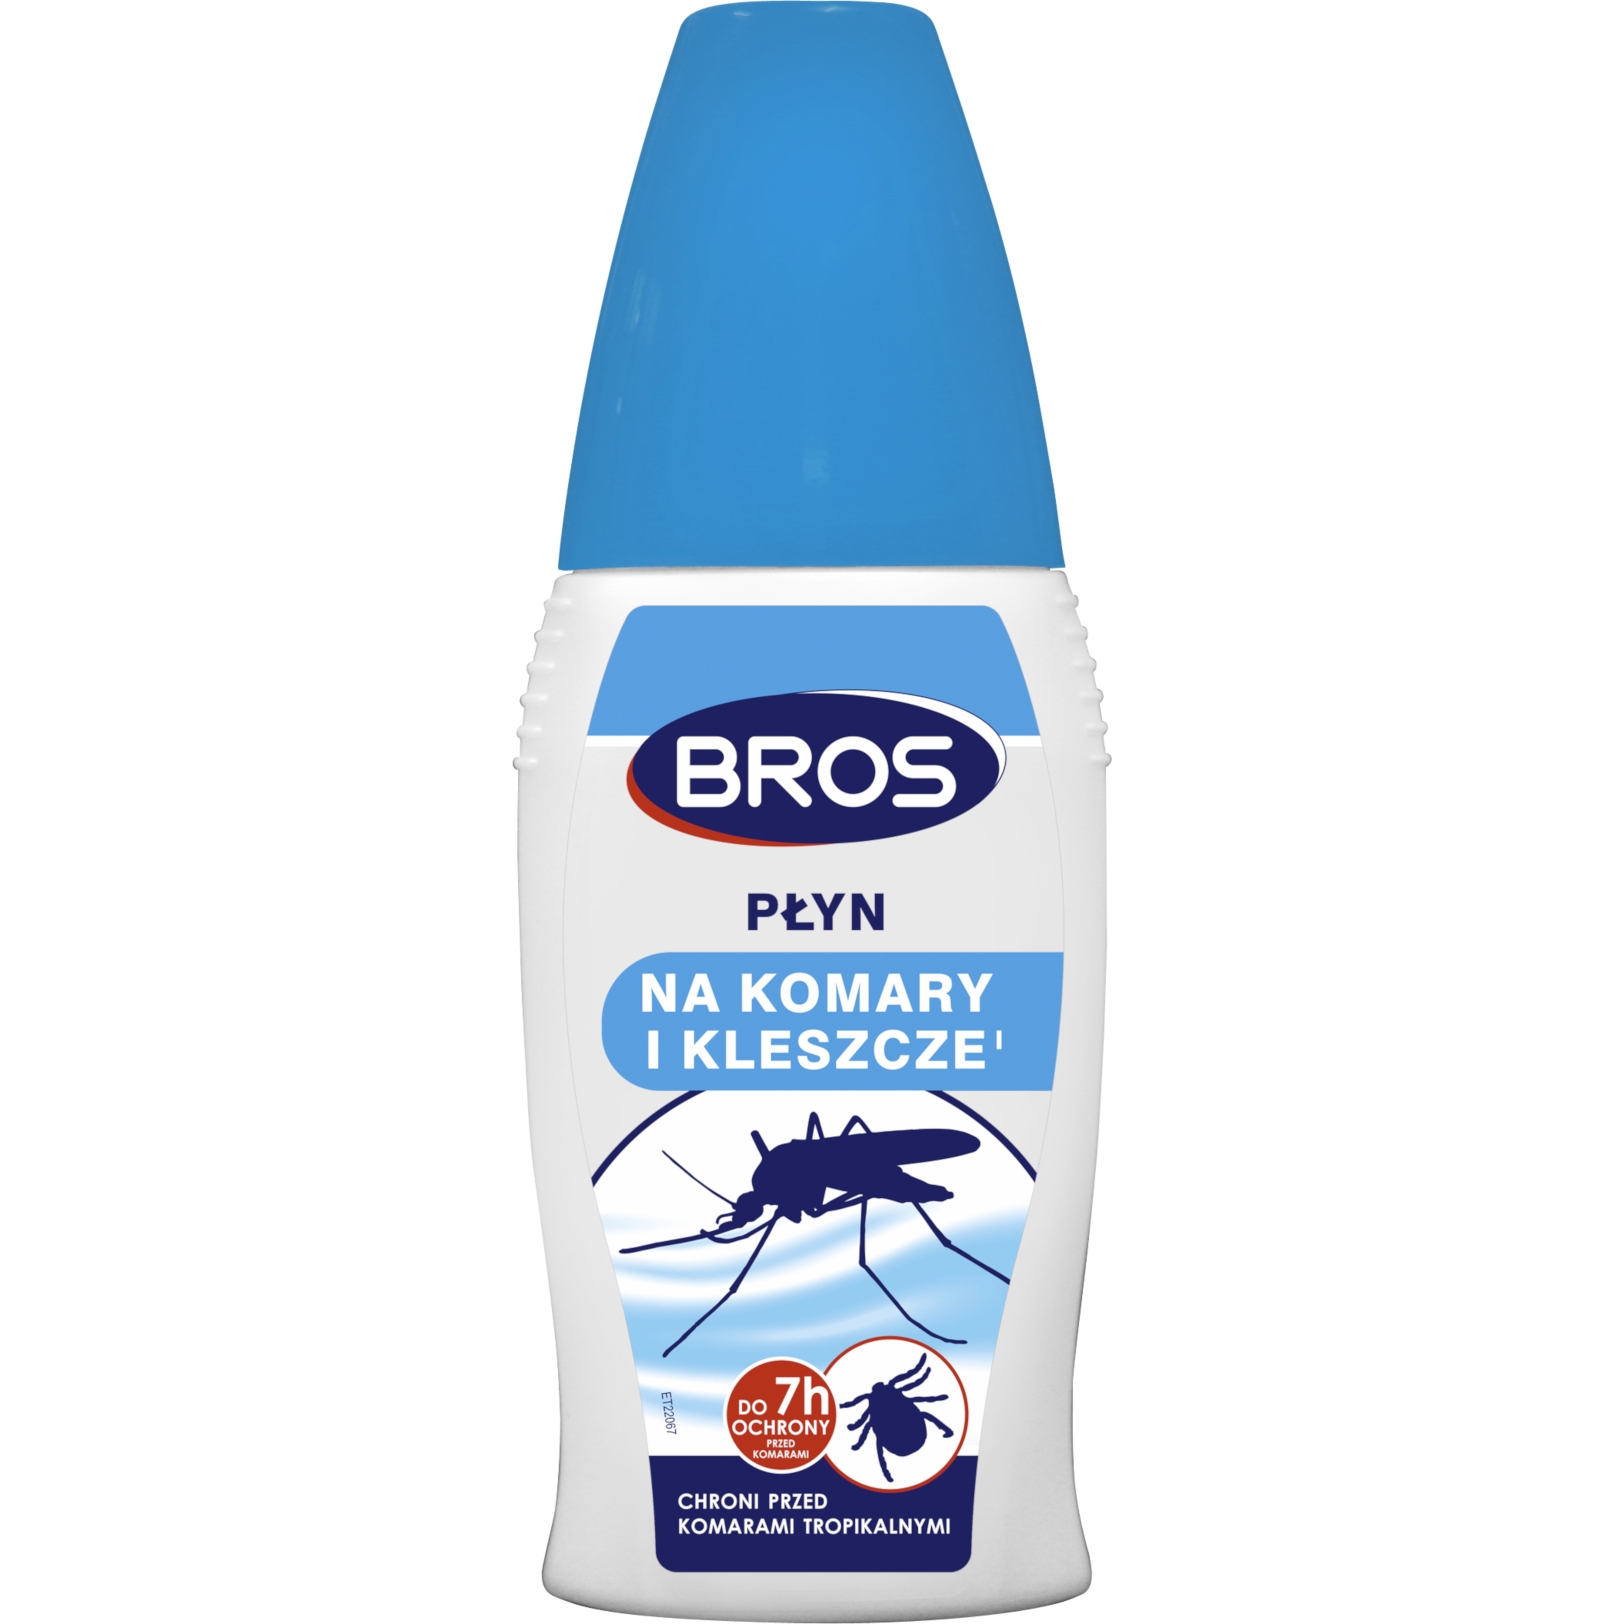 Image of Płyn Bros na komary i kleszcze 100 ml (595-008)